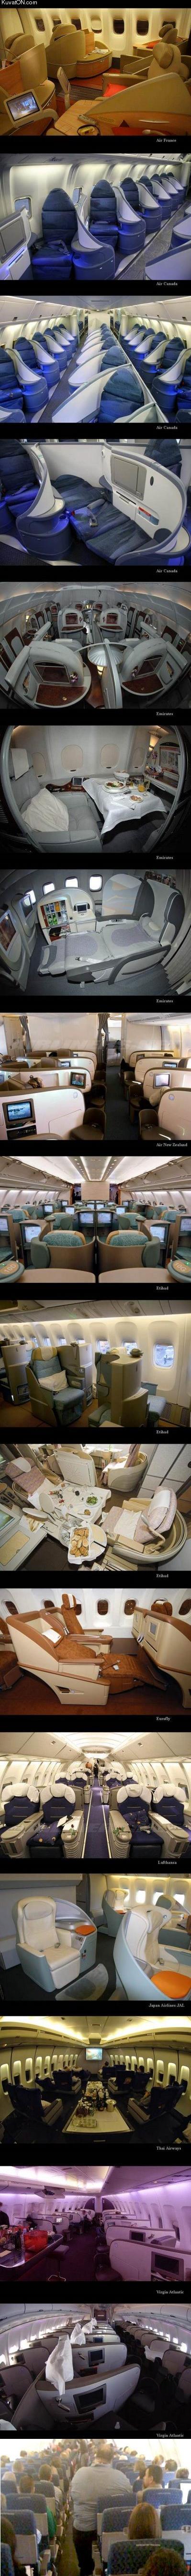 luxury_airplanes.jpg